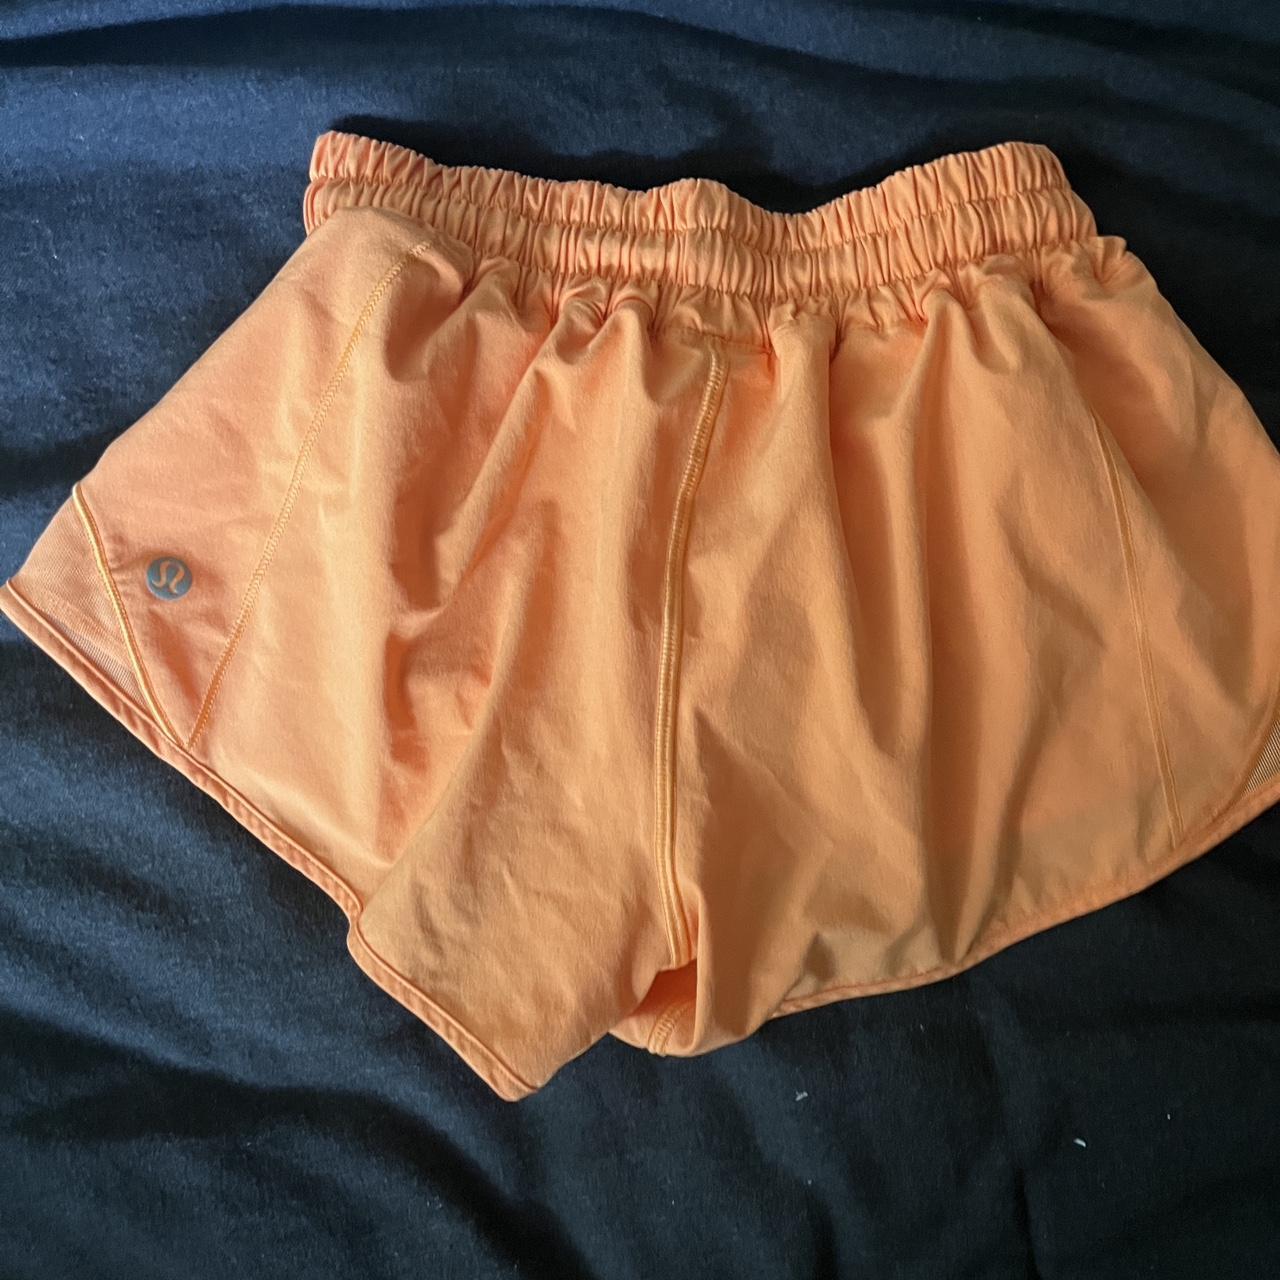 Lululemon Women's Orange Shorts (2)